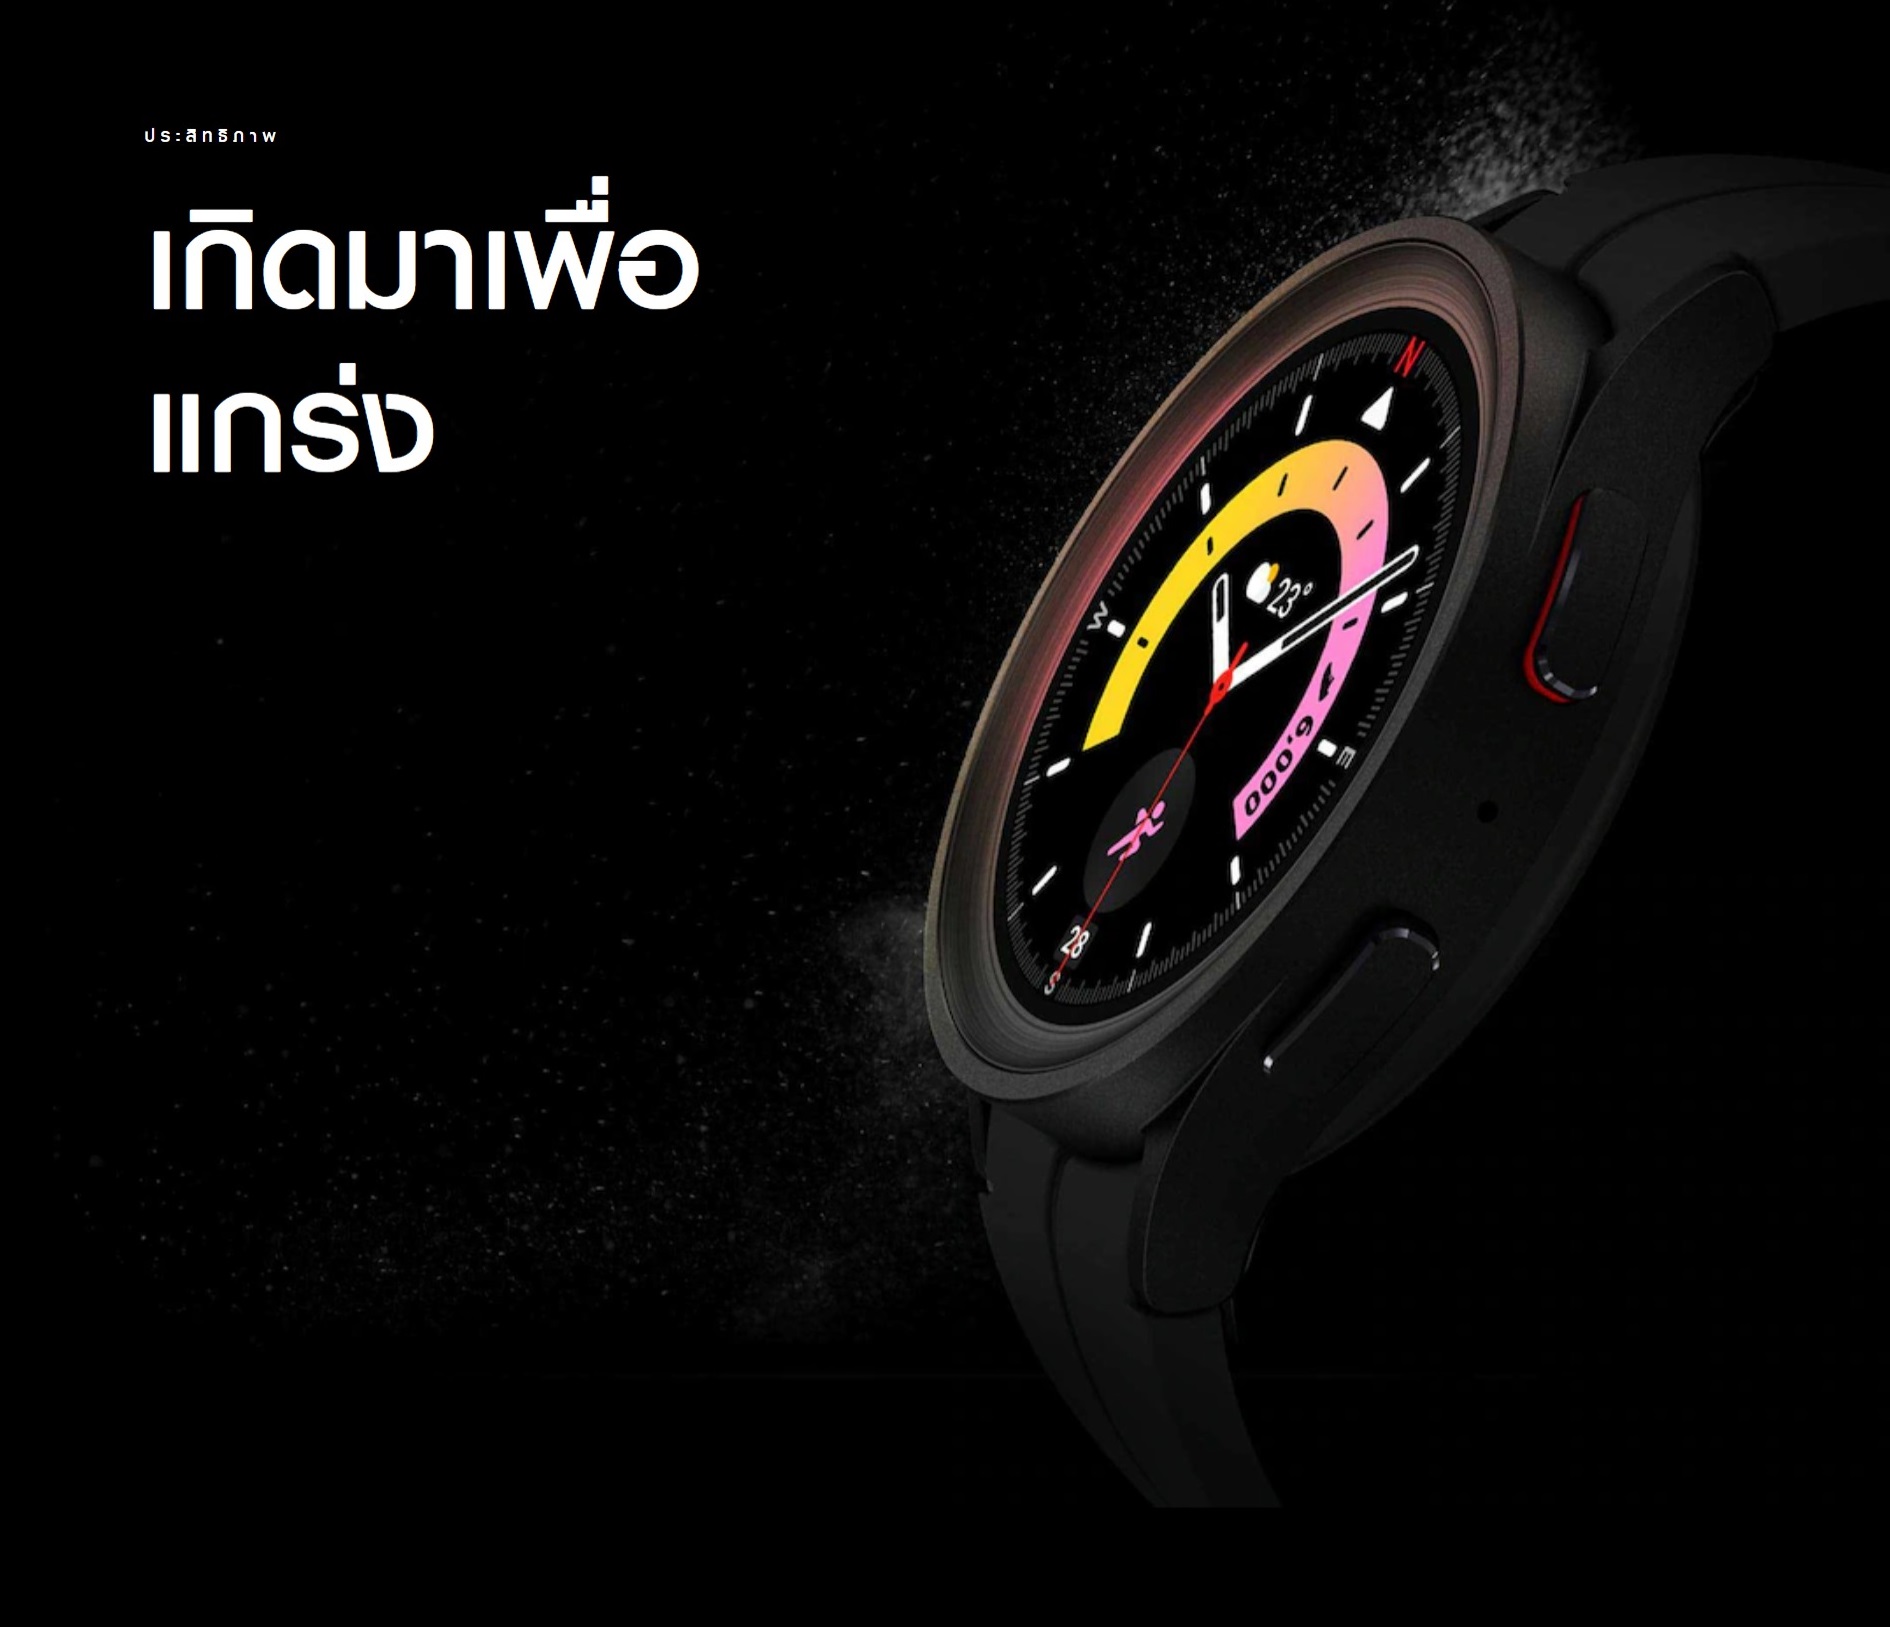 เกี่ยวกับ Samsung Galaxy Watch 5  Pro Blth